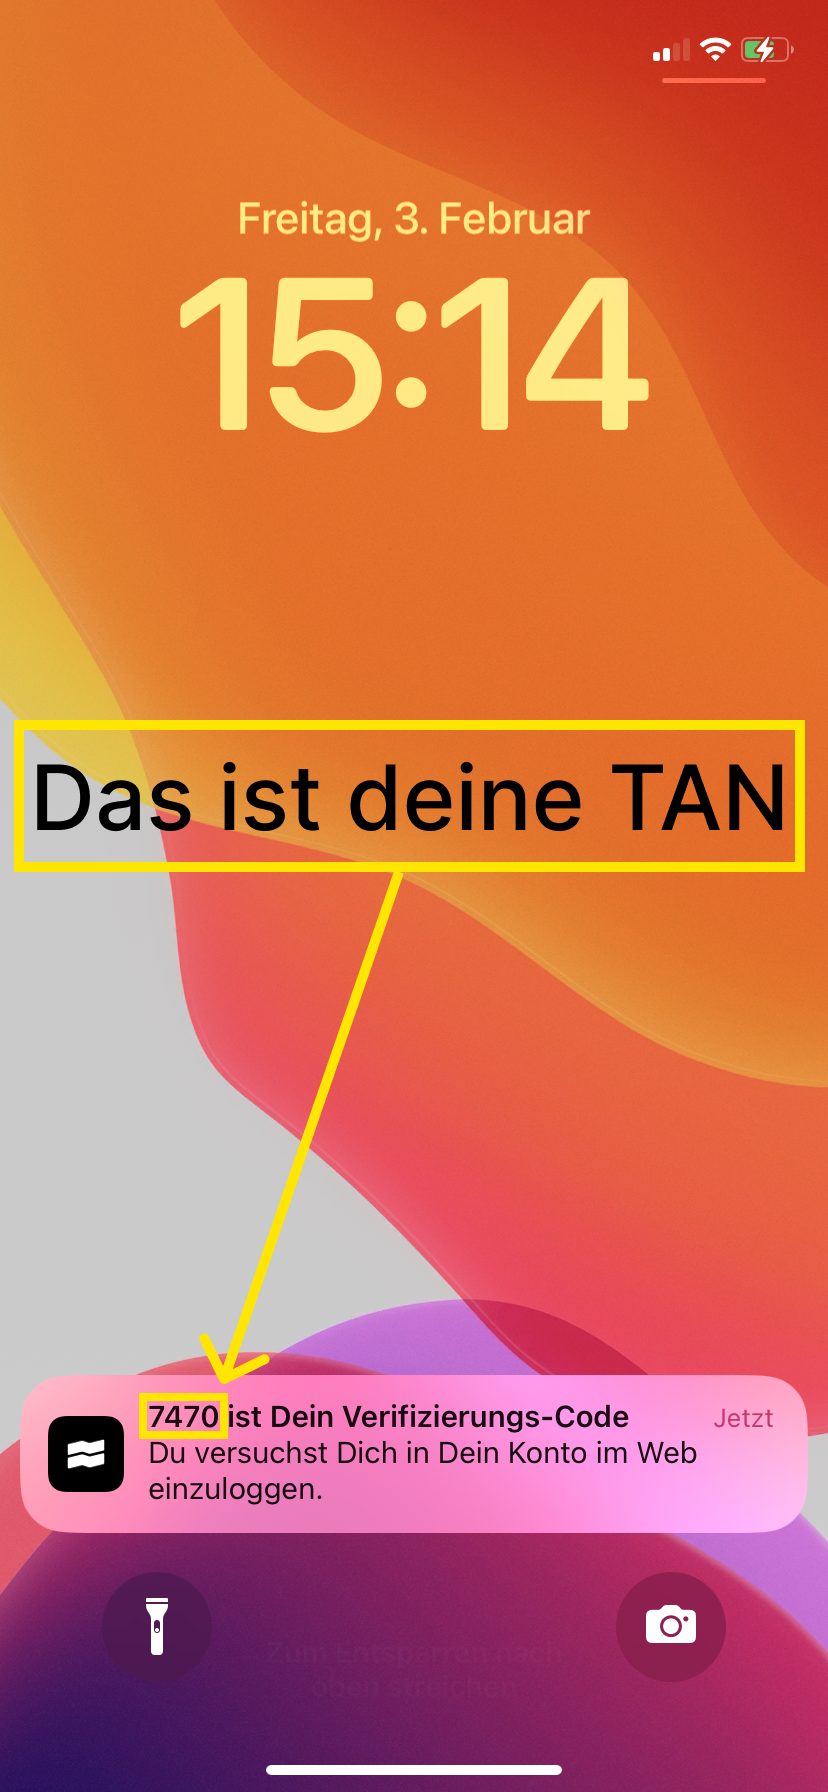 tr-anleitung-tan.png